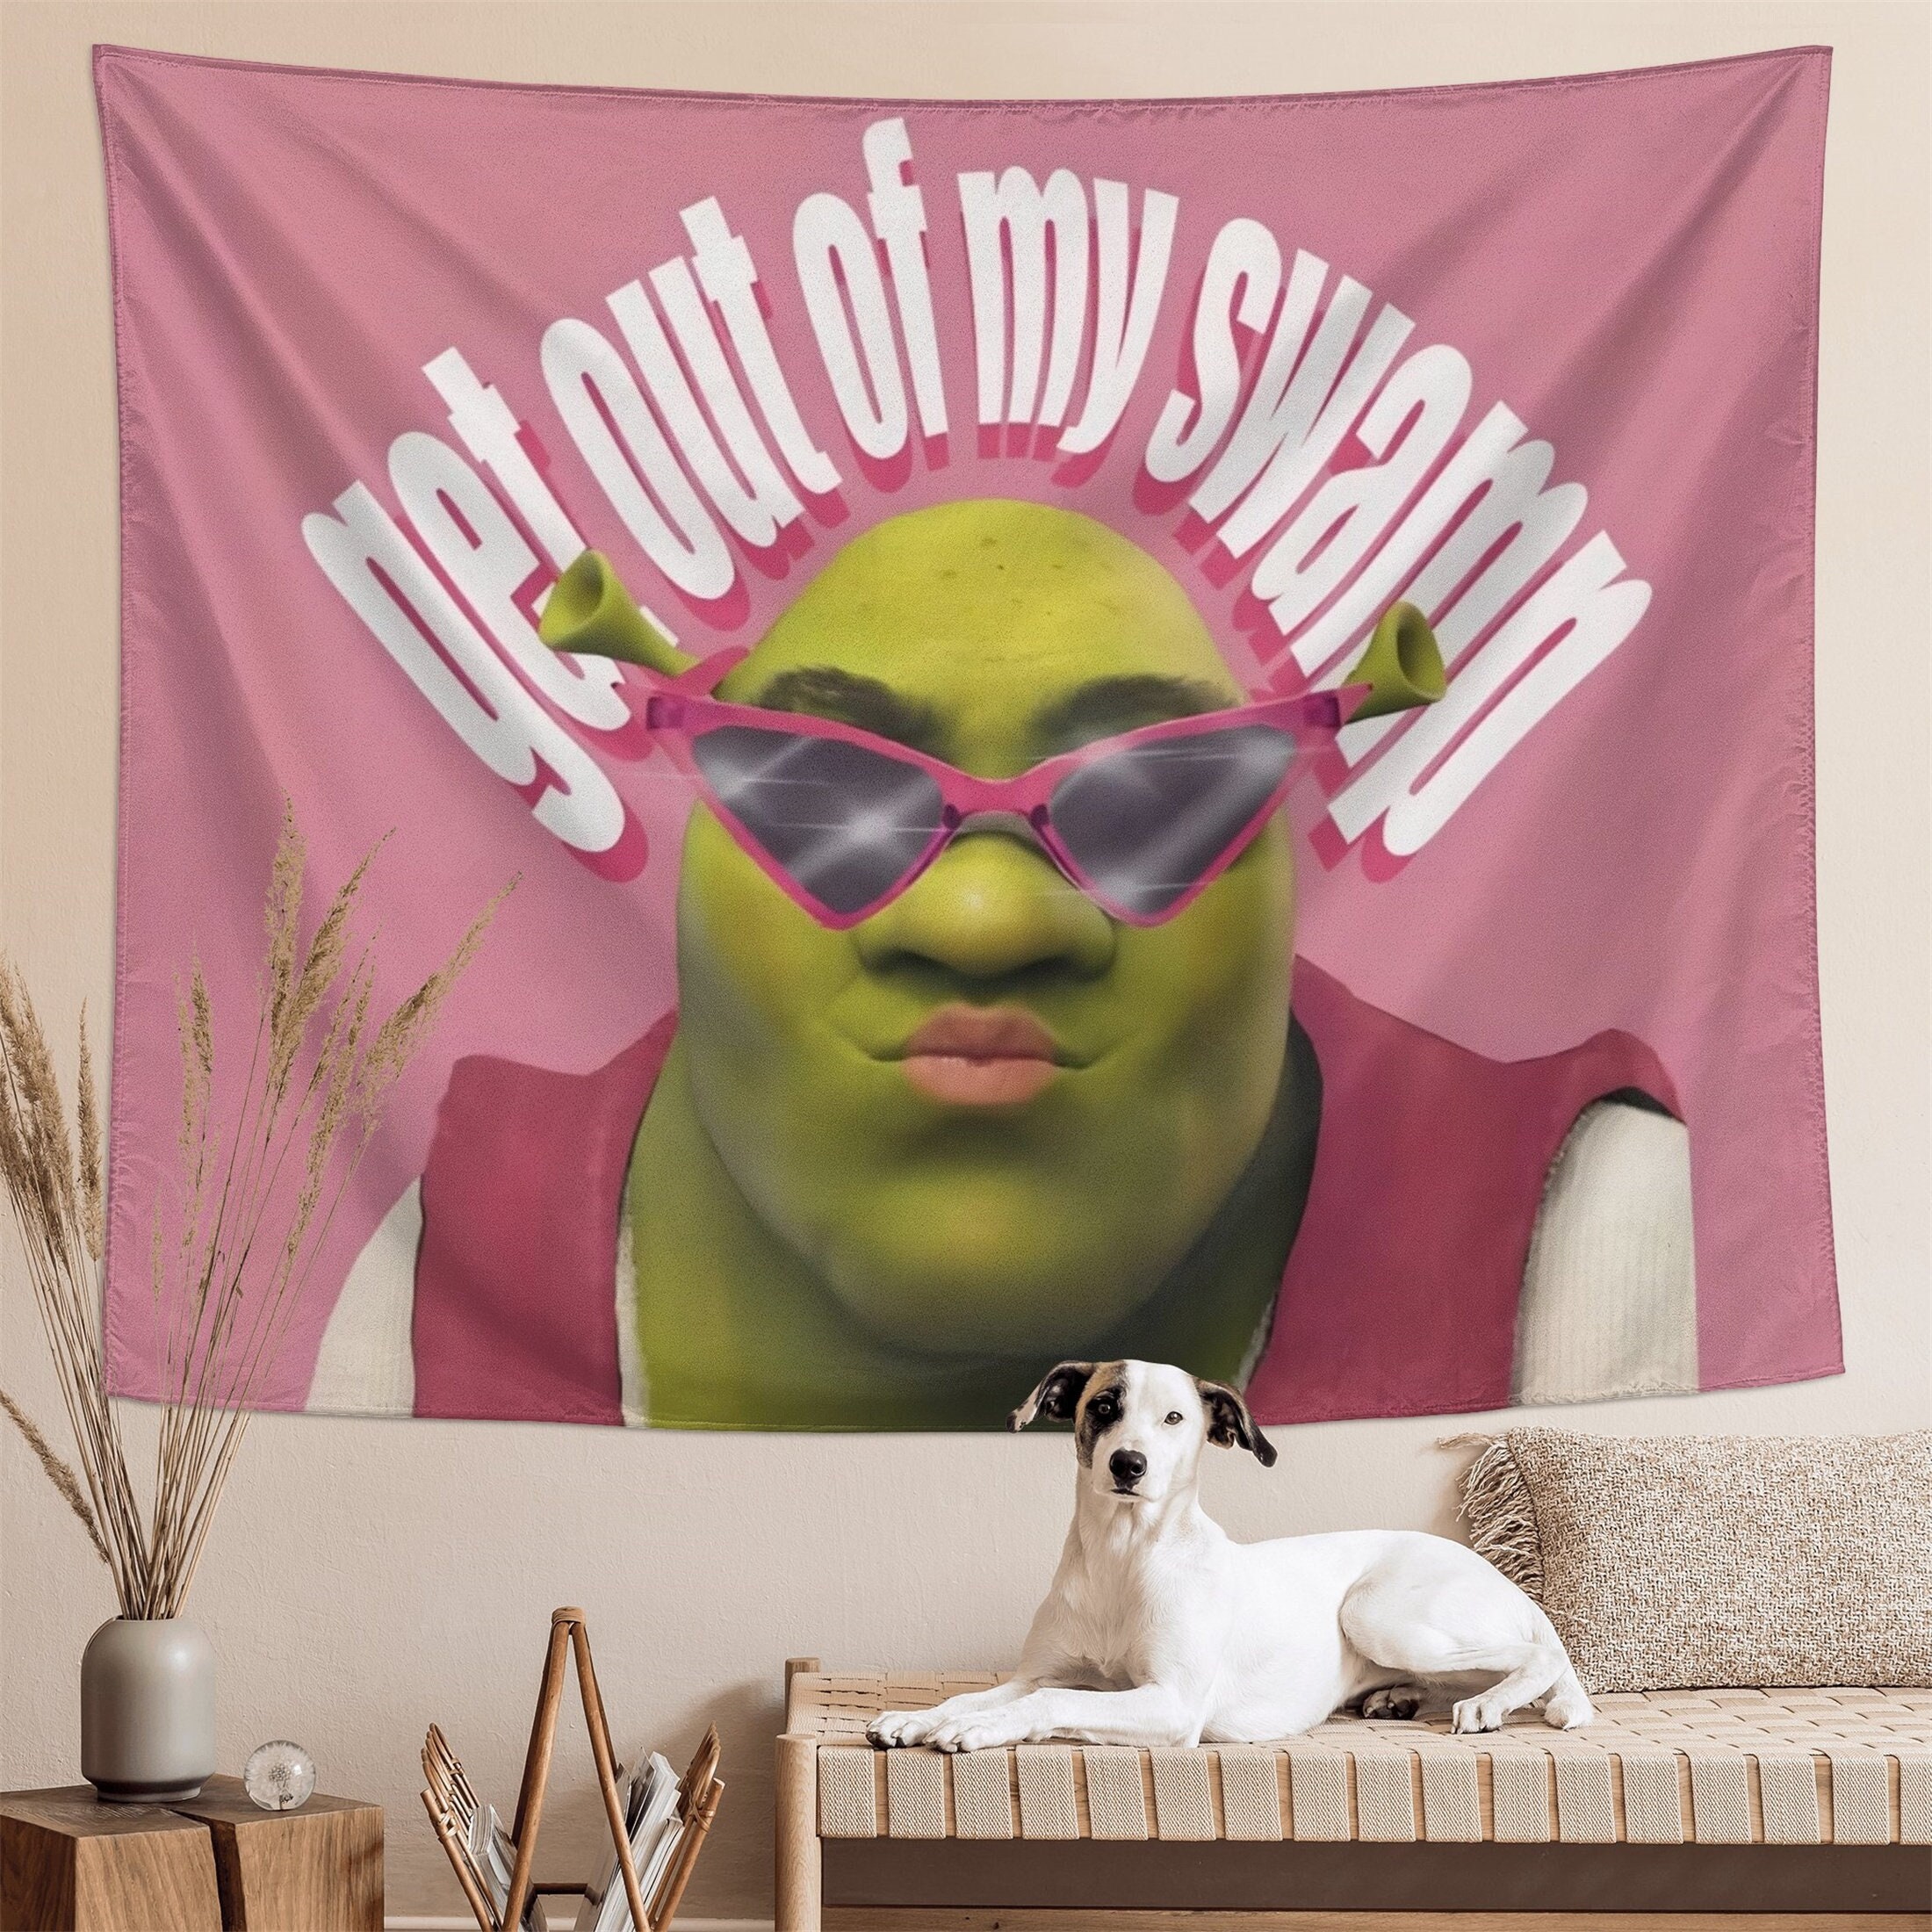 Shrek the Rock meme Poster for Sale by tttatia